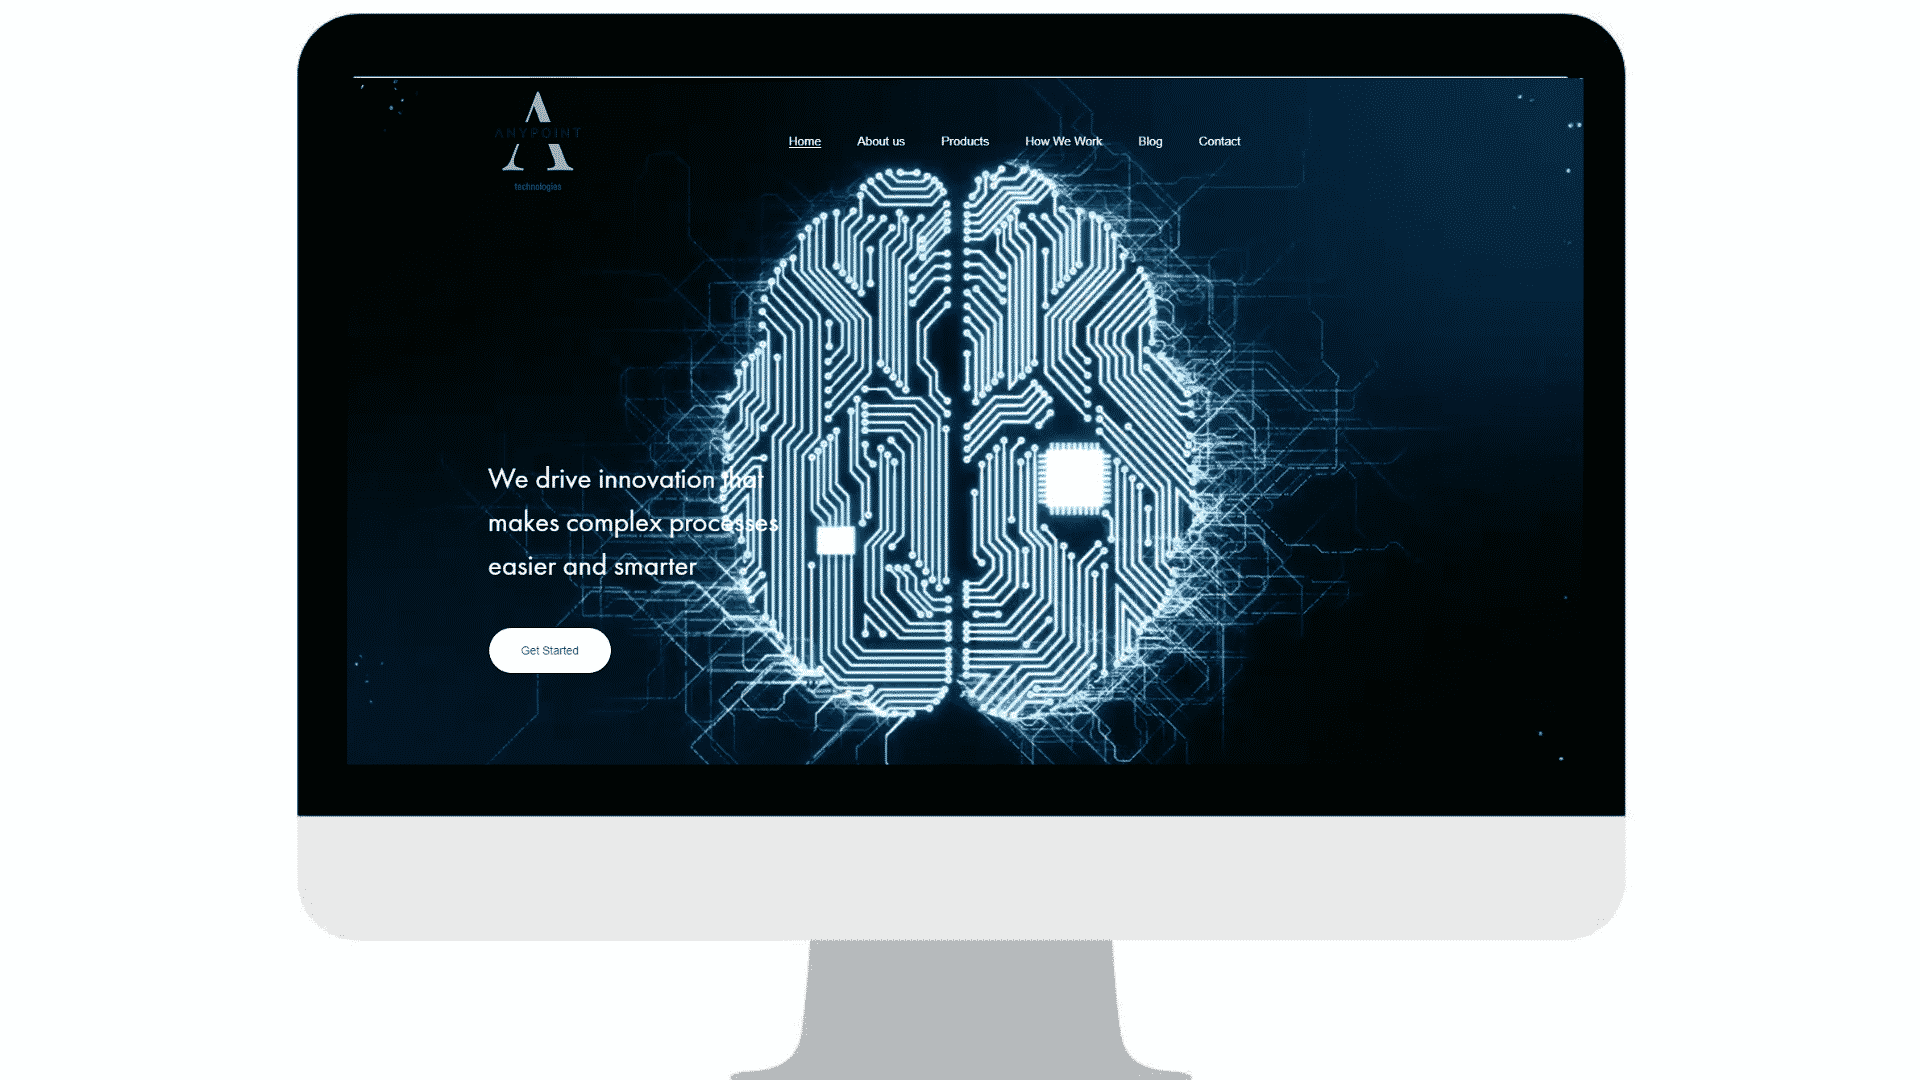 הקמת אתר לחברת anypoint-tech - קורנגה בע"מ